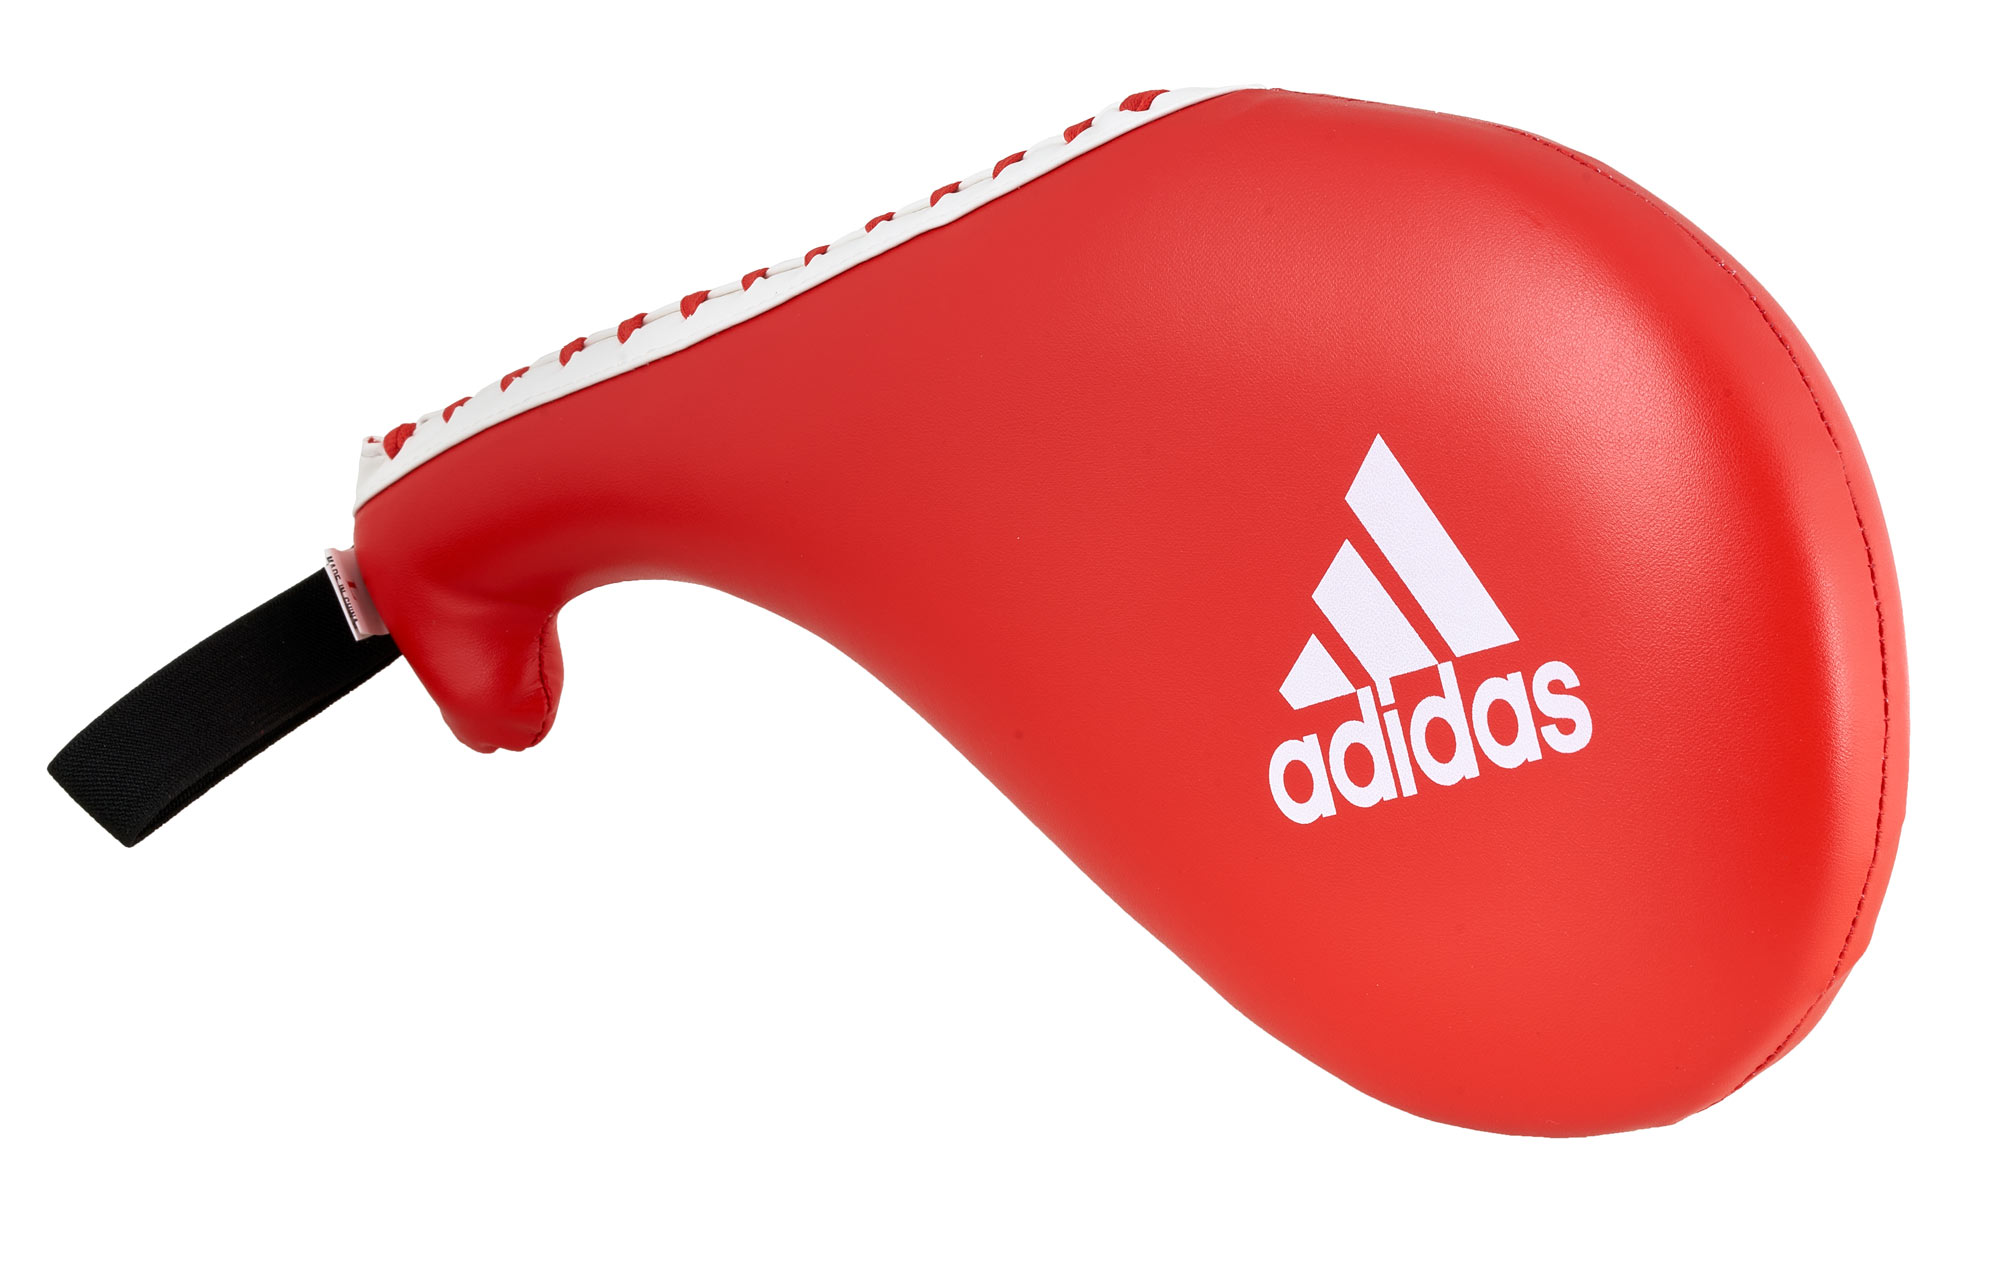 adidas taekwondo single target pad  ADITST03 red, large size